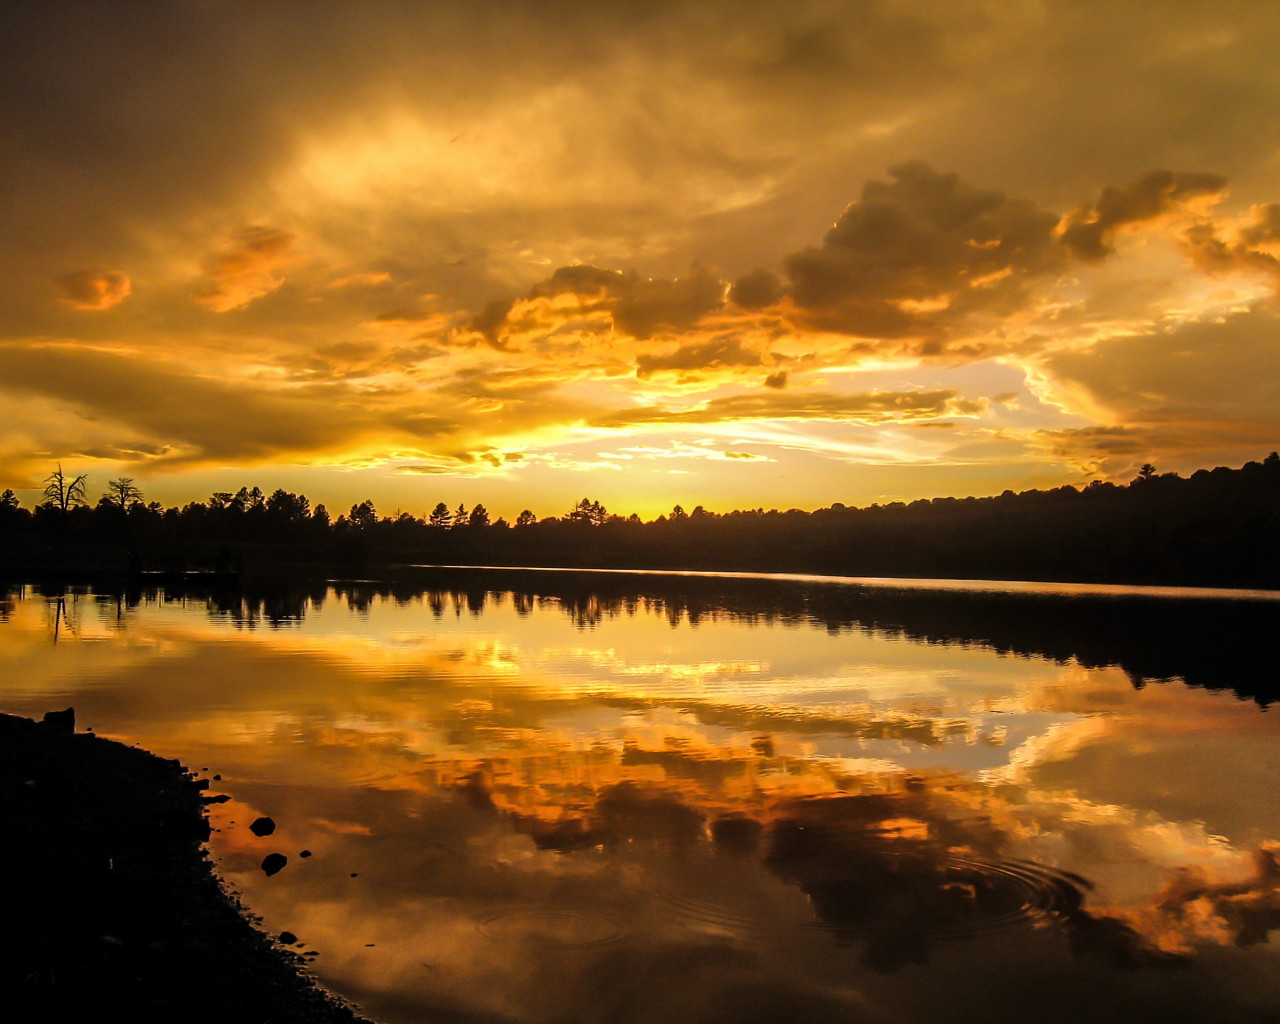 Atardecer dorado reflejandose sobre un lago